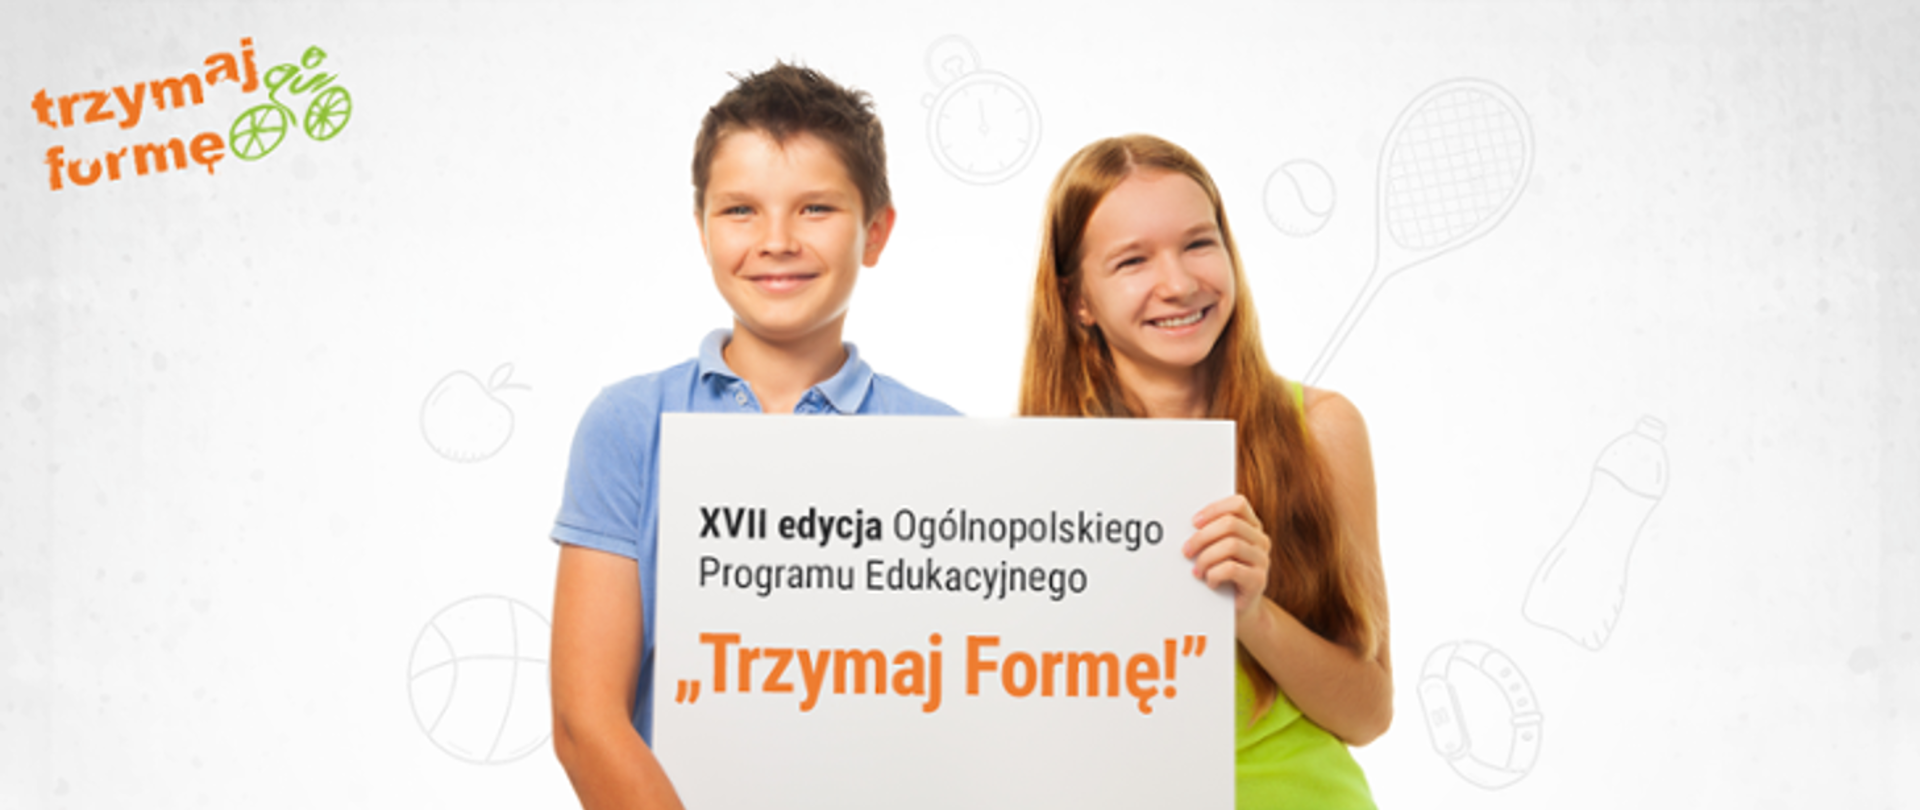 W lewym górnym rogu znajduje się napis trzymaj formę. W centralnym punkcie dwoje nastolatków - chłopiec i dziewczyna trzymają tabliczkę z napisem "XVII edycja Ogólnopolskiego Programu Edukacyjnego "Trzymaj Formę!""